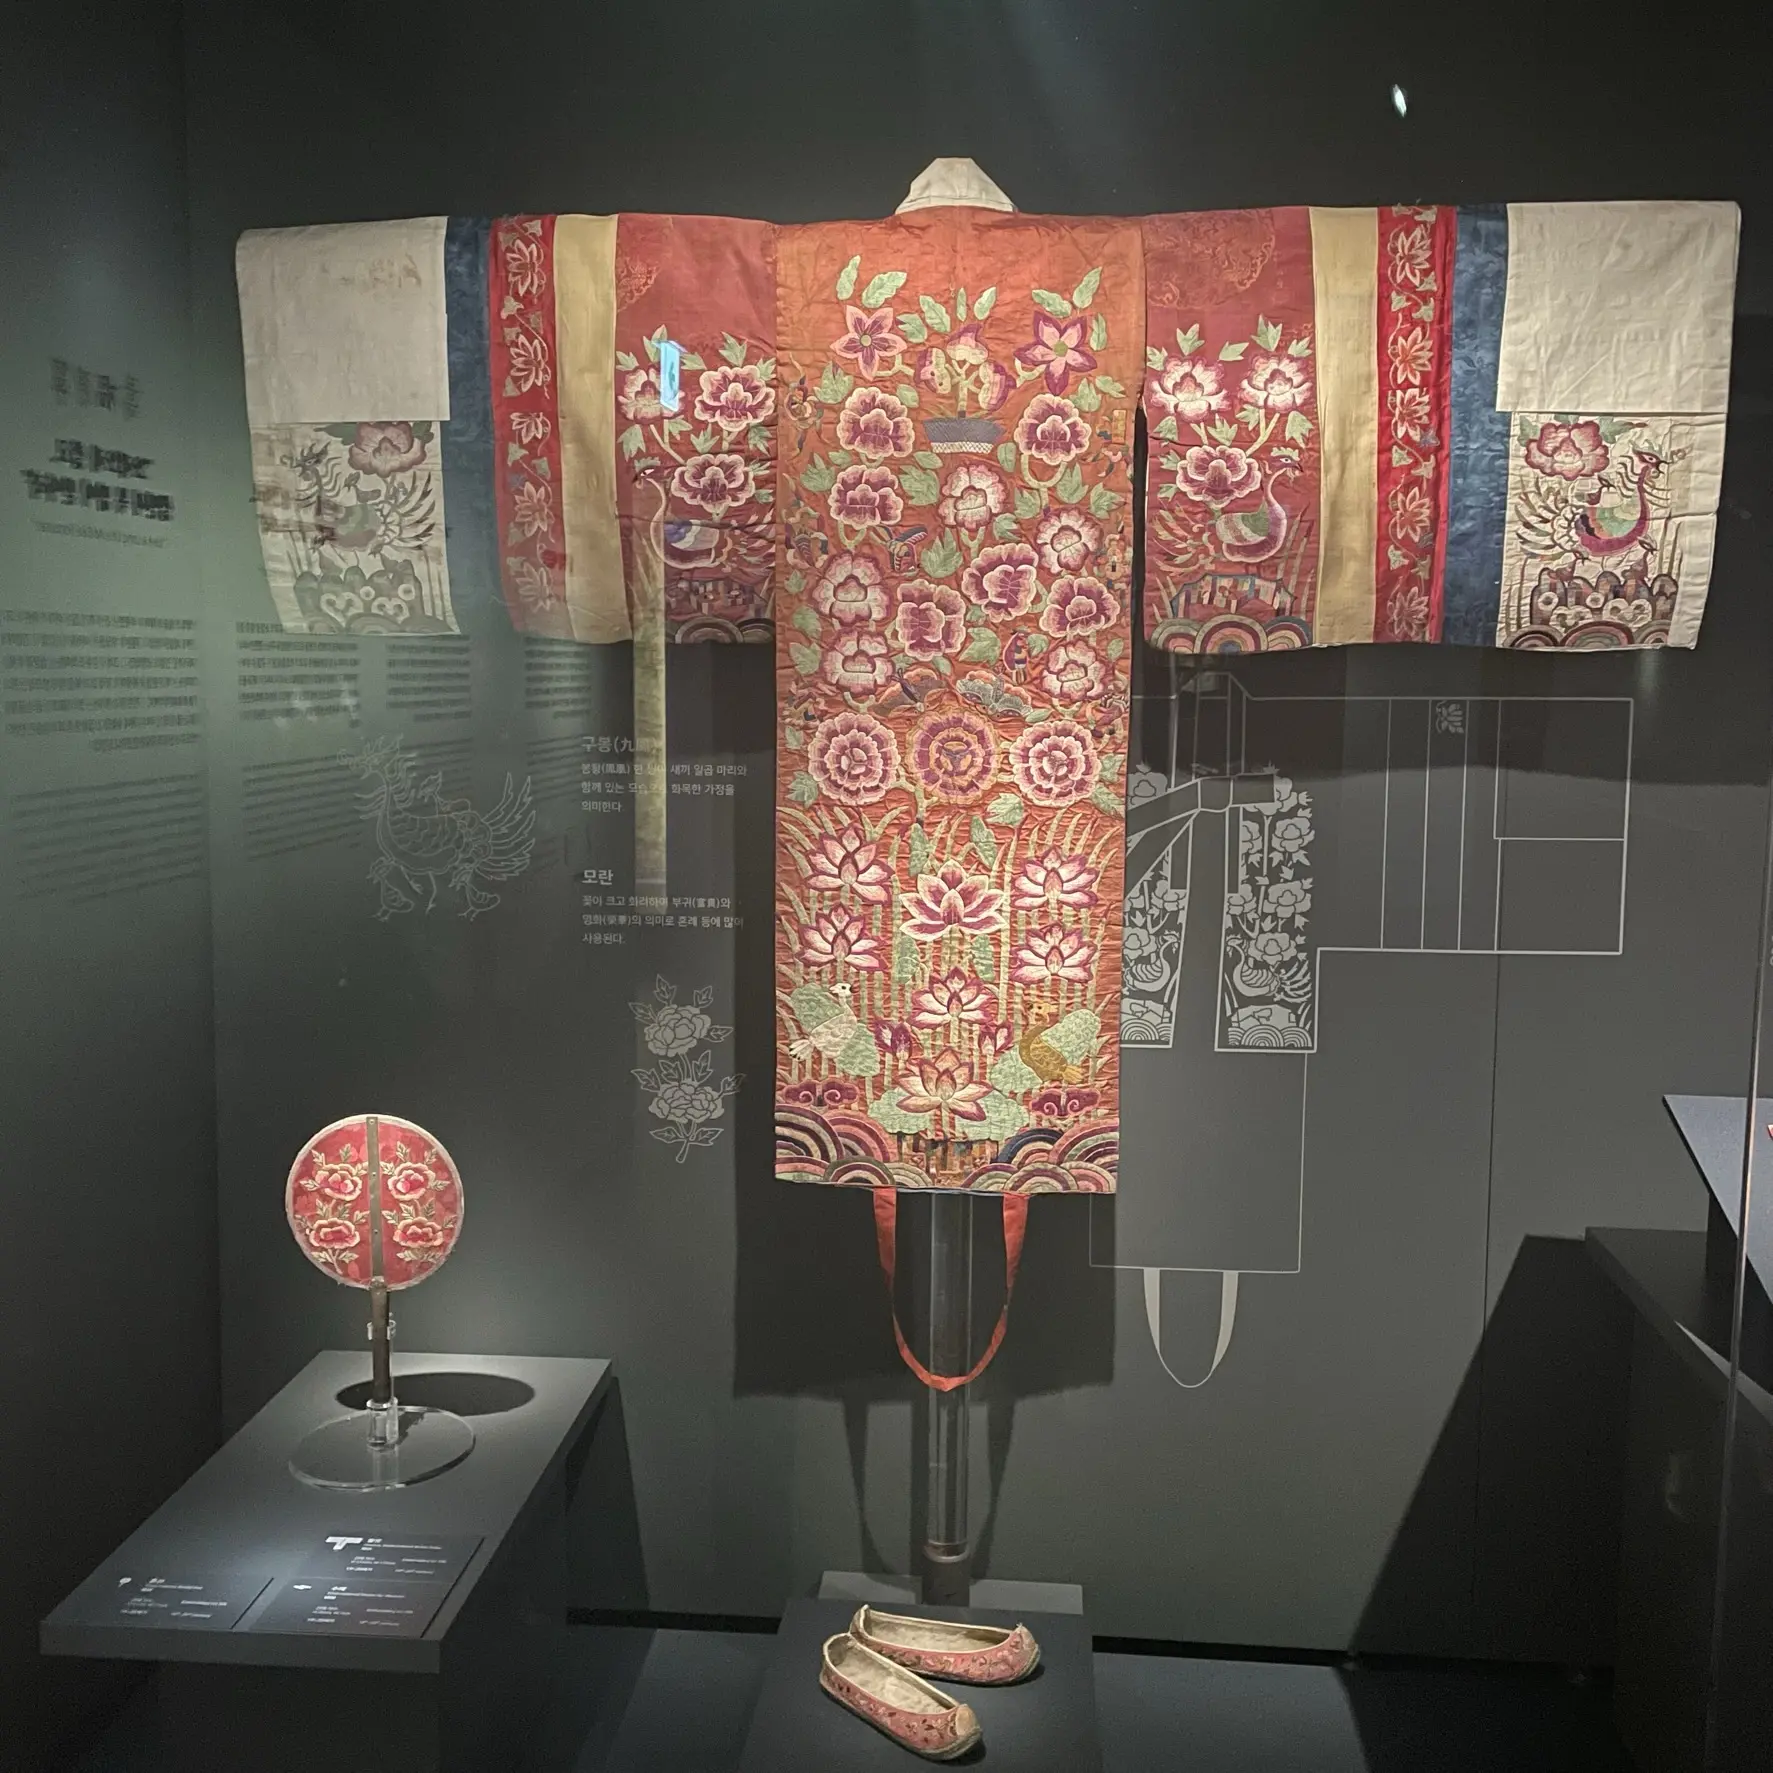 ソウル工芸博物館の展示、刺繍が施された衣装